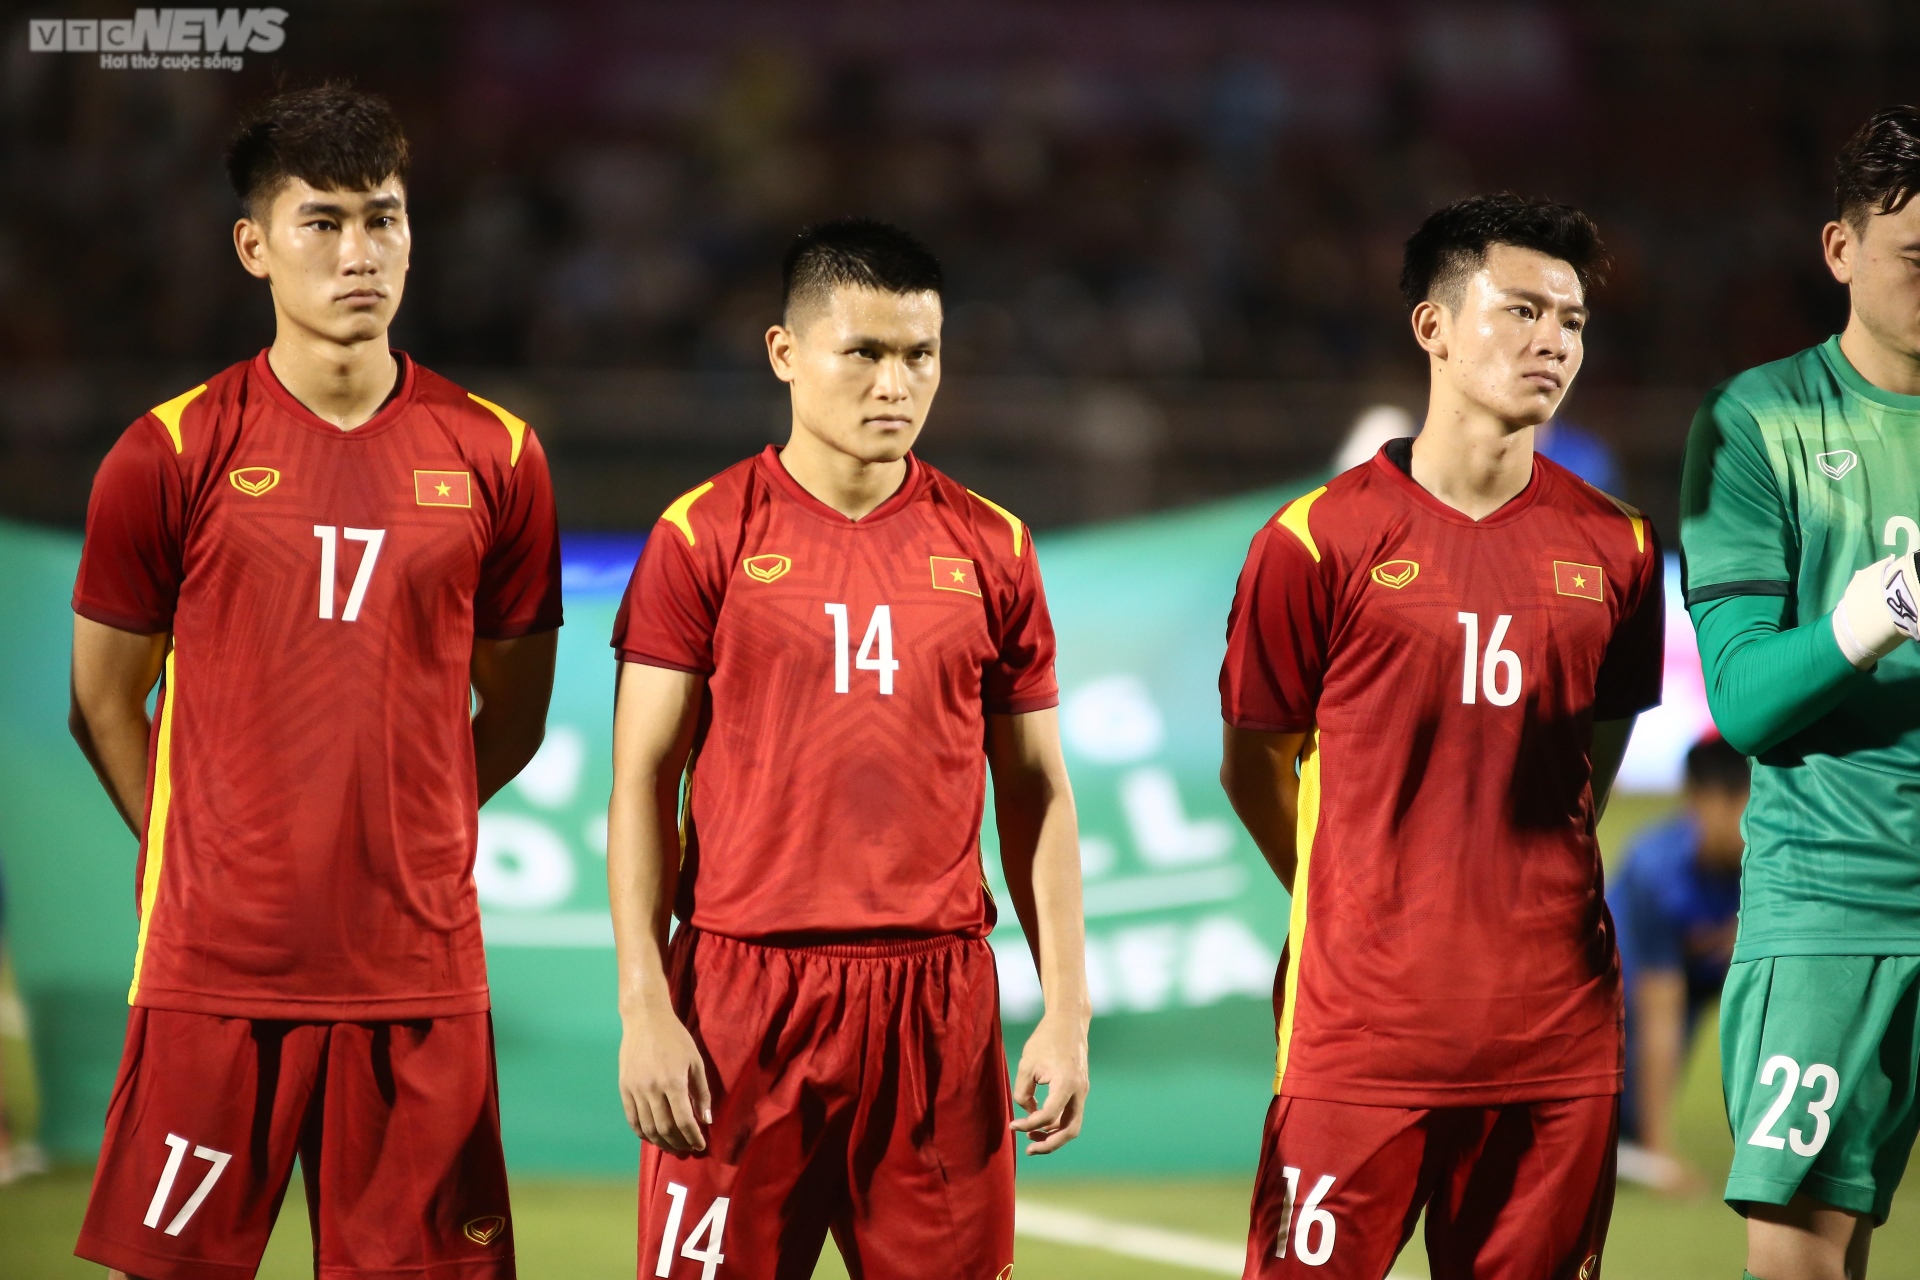 Tân binh U23 đua nhau tỏa sáng trong lần đầu khoác áo tuyển Việt Nam - Ảnh 1.